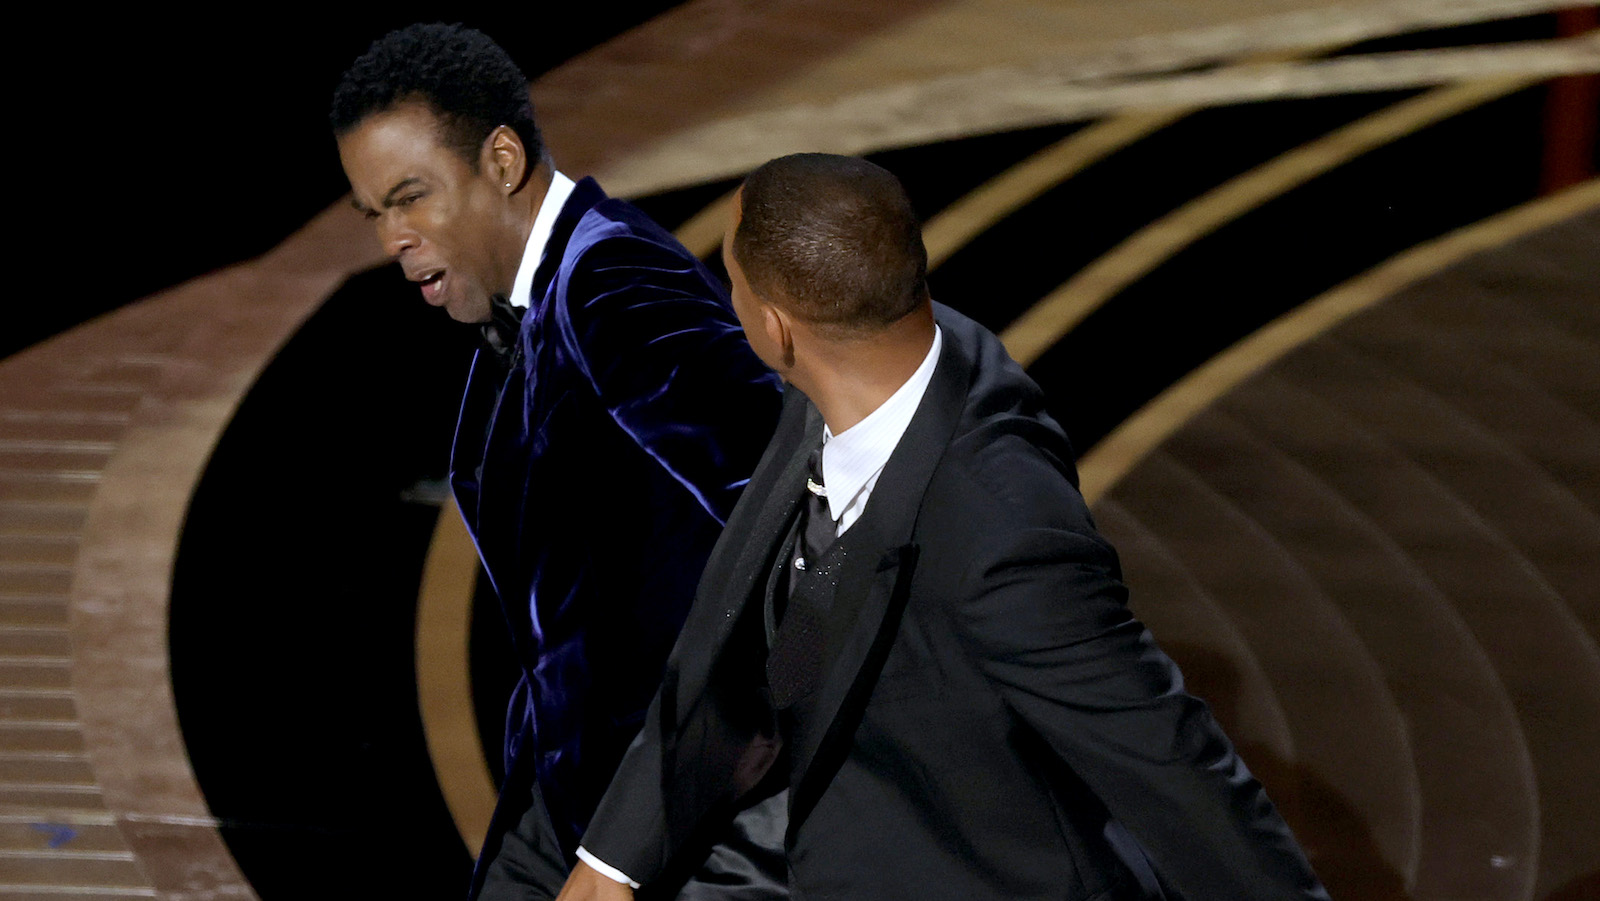 Premios Oscar 2022: ¿qué pasó entre Will Smith y Chris Rock?